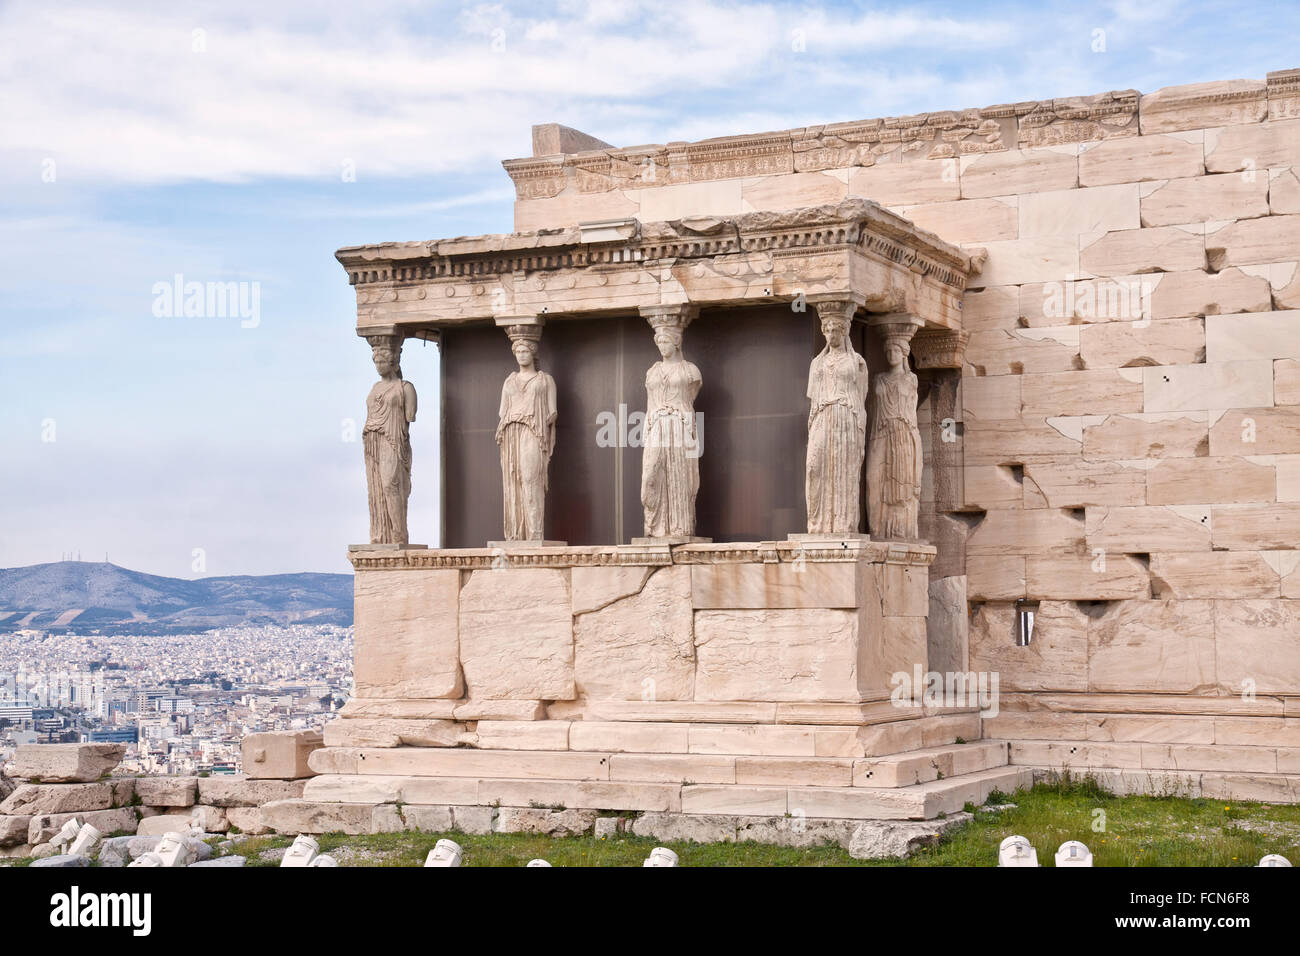 L'Eretteo è un antico tempio greco sul lato nord dell'Acropoli di Atene in Grecia. Foto Stock